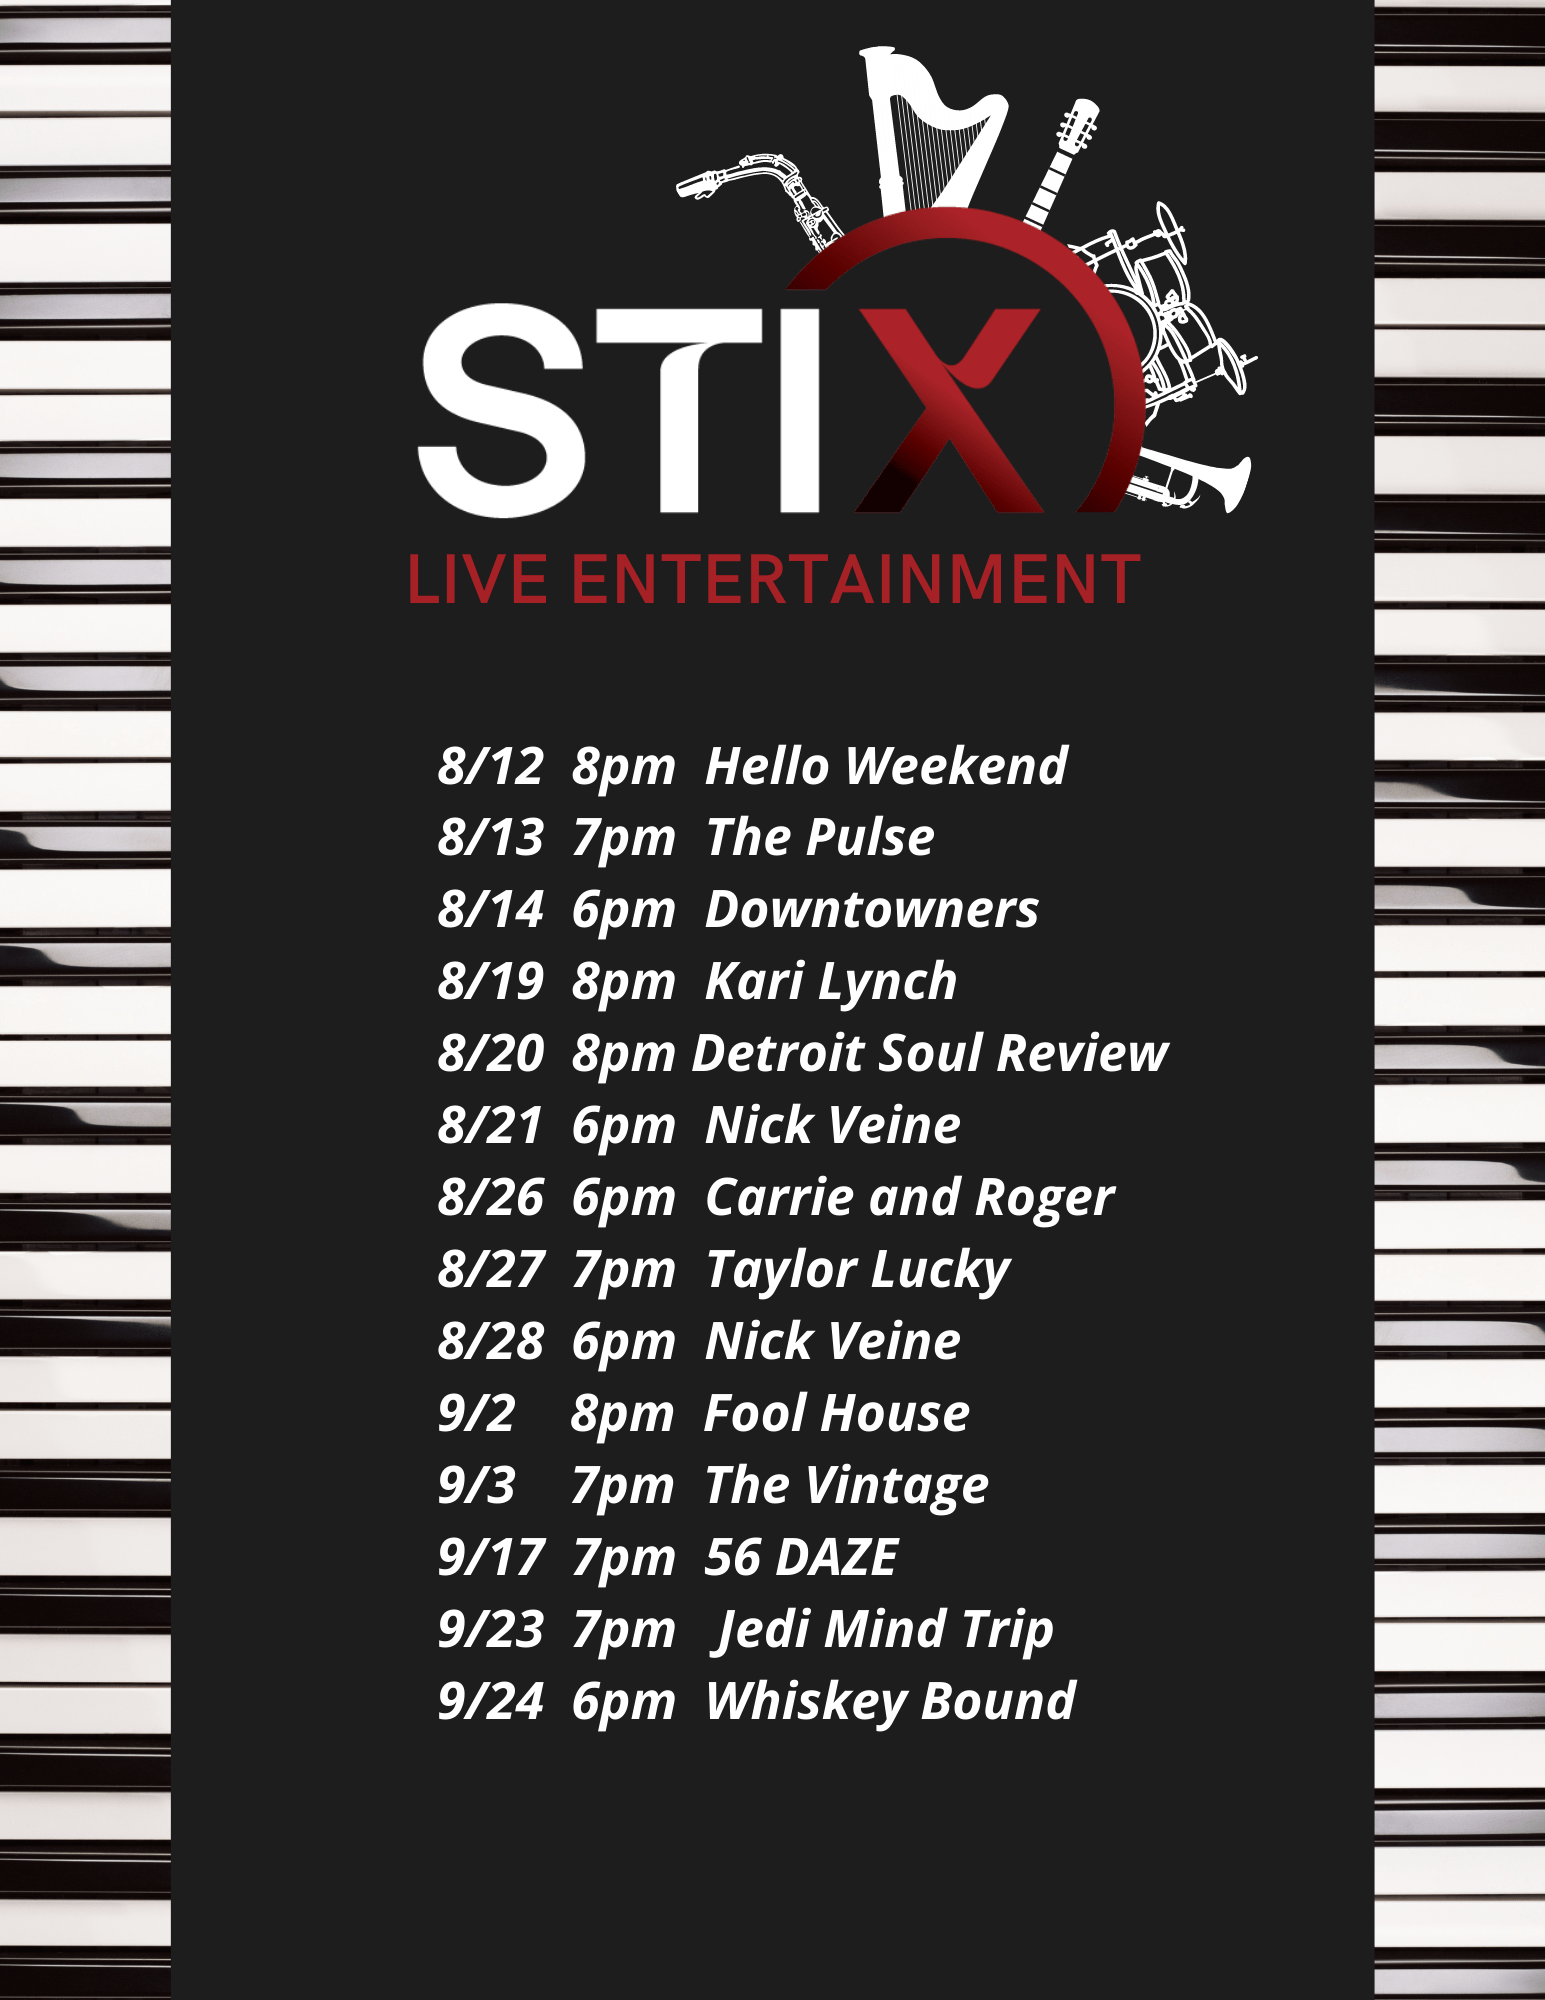 Live Entertainment at STIX!